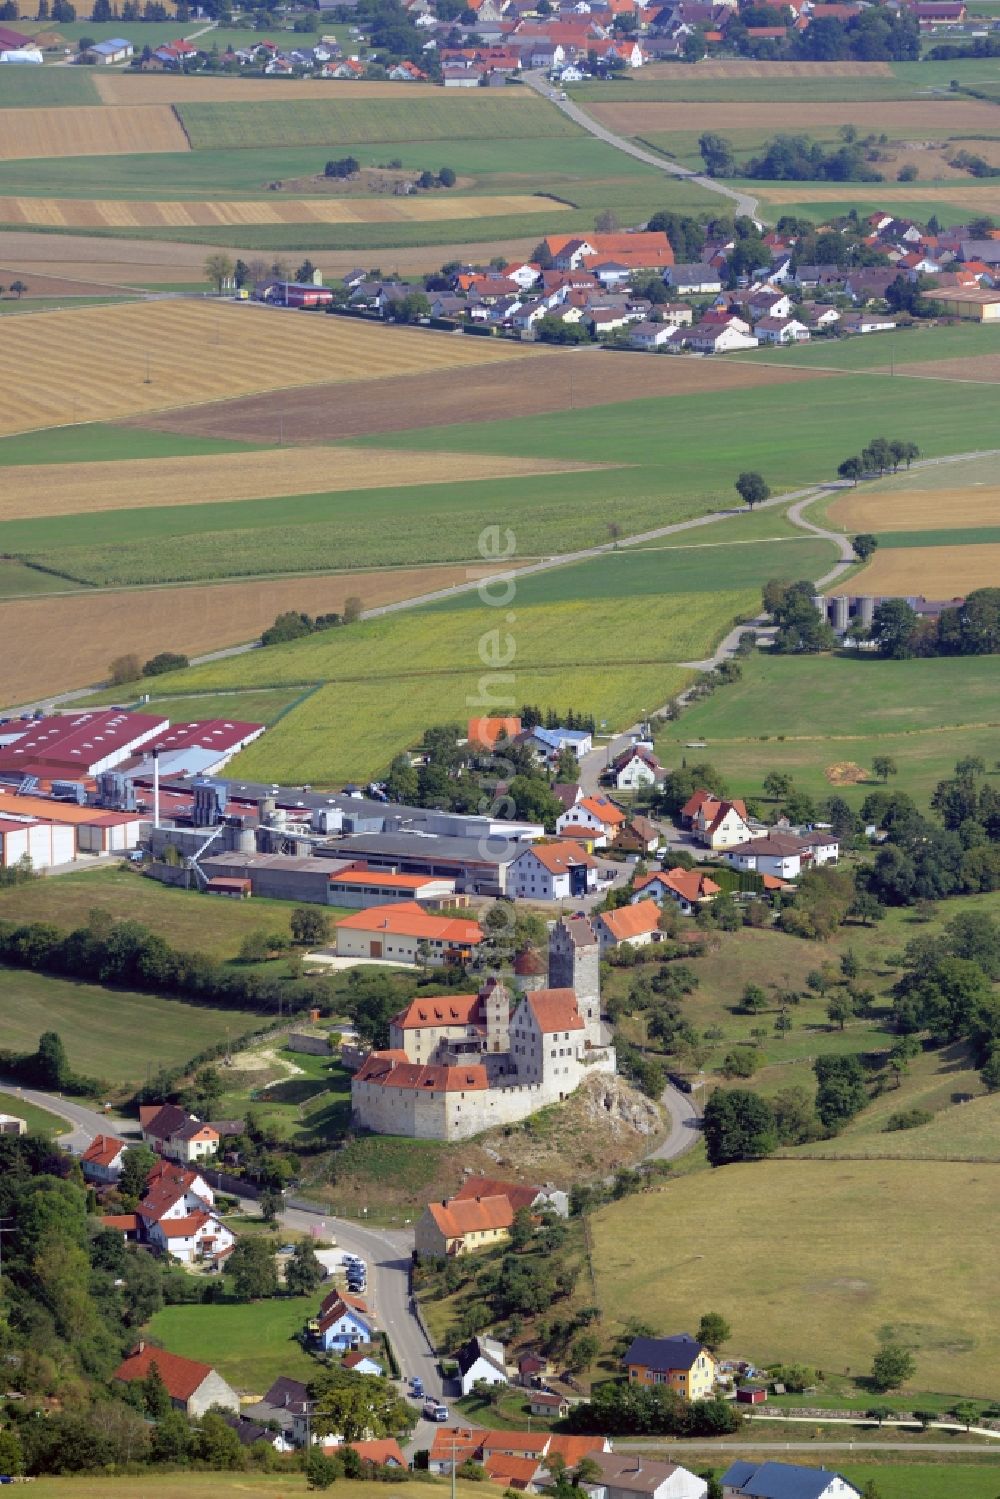 Dischingen aus der Vogelperspektive: Burganlage der Burg Katzenstein in Dischingen im Bundesland Baden-Württemberg